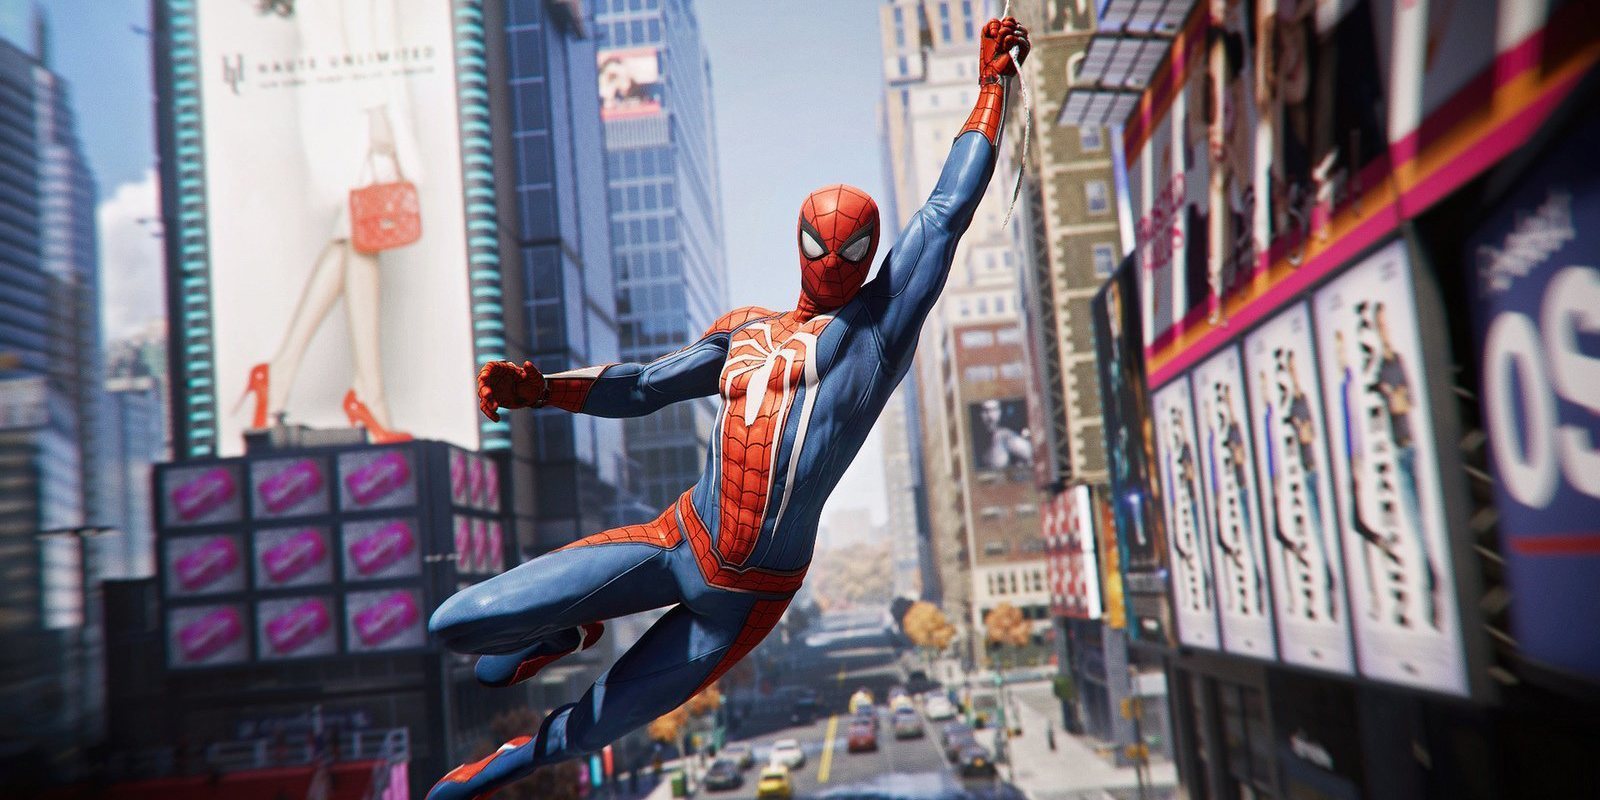 'Spider-Man': adaptación del juego a cómic